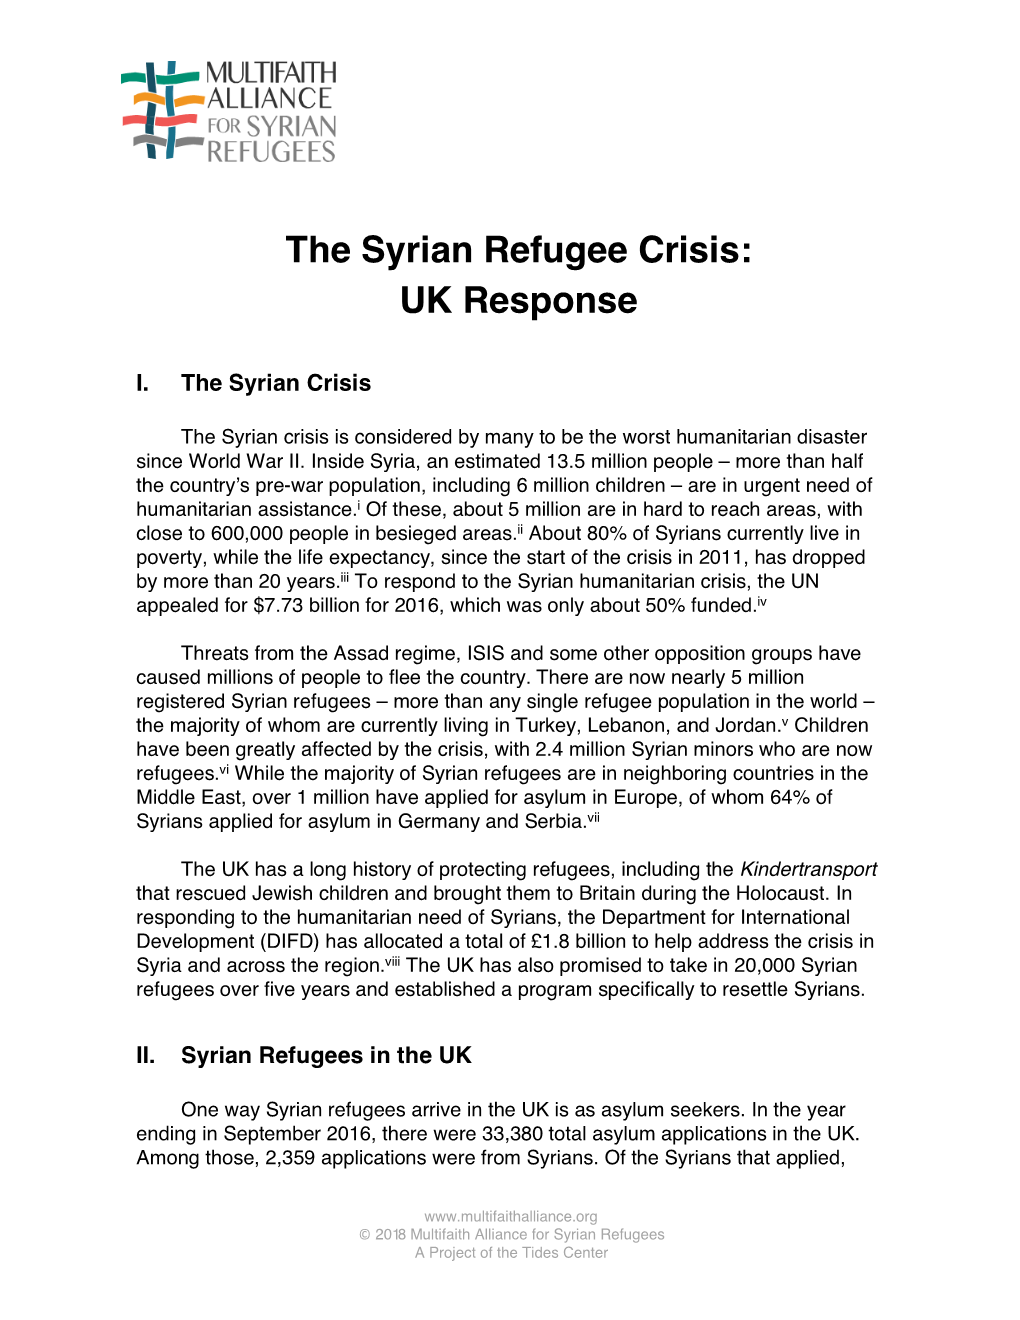 The Syrian Refugee Crisis: UK Response